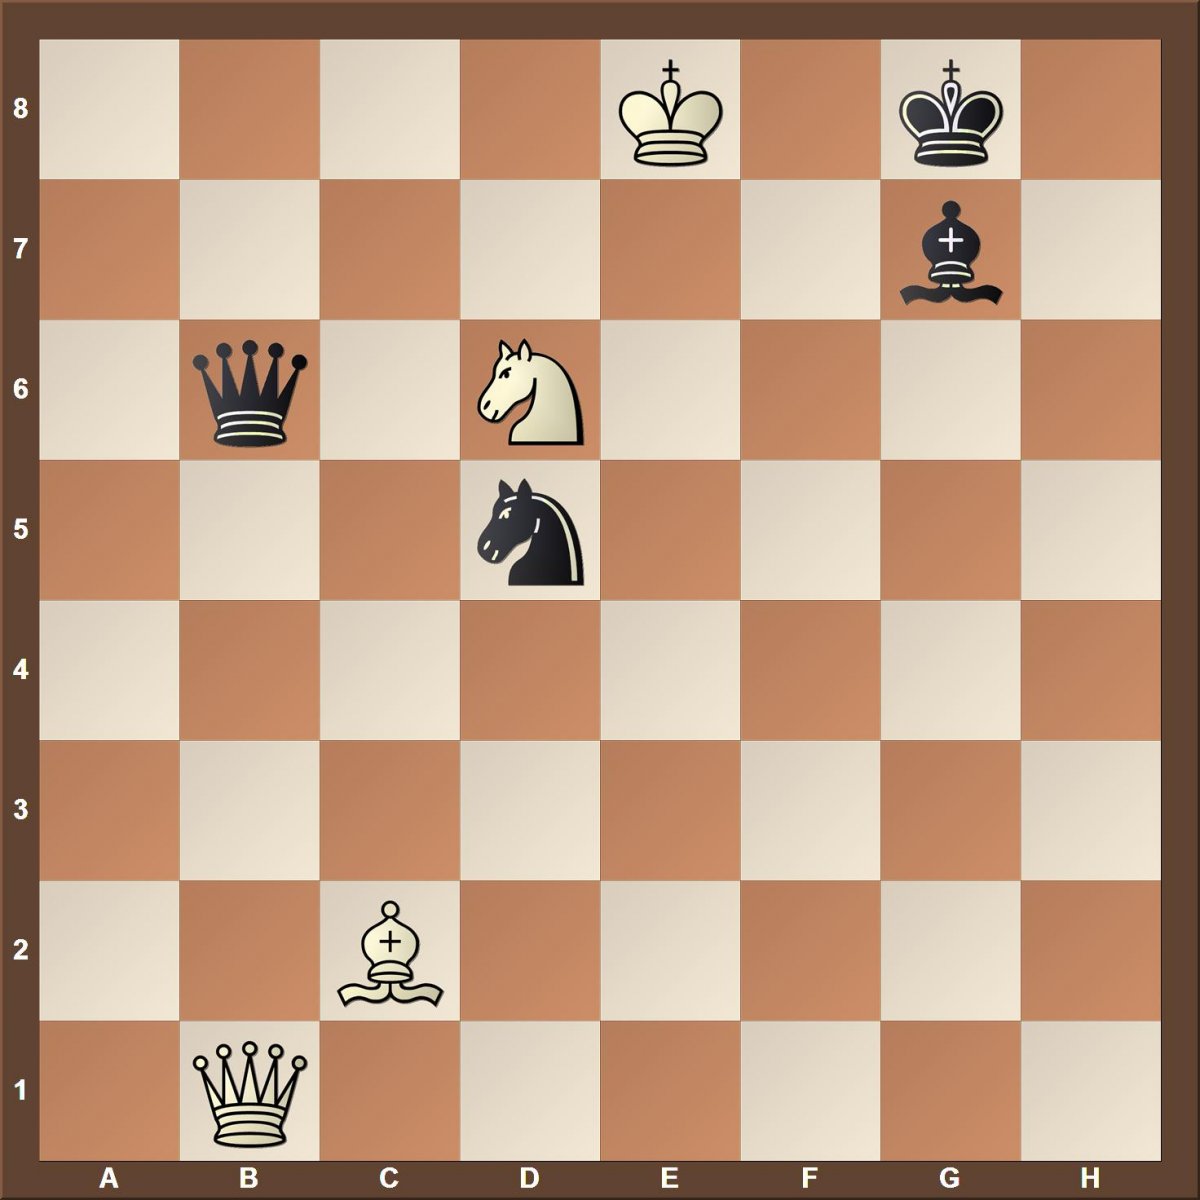 Мат в два хода в шахматах